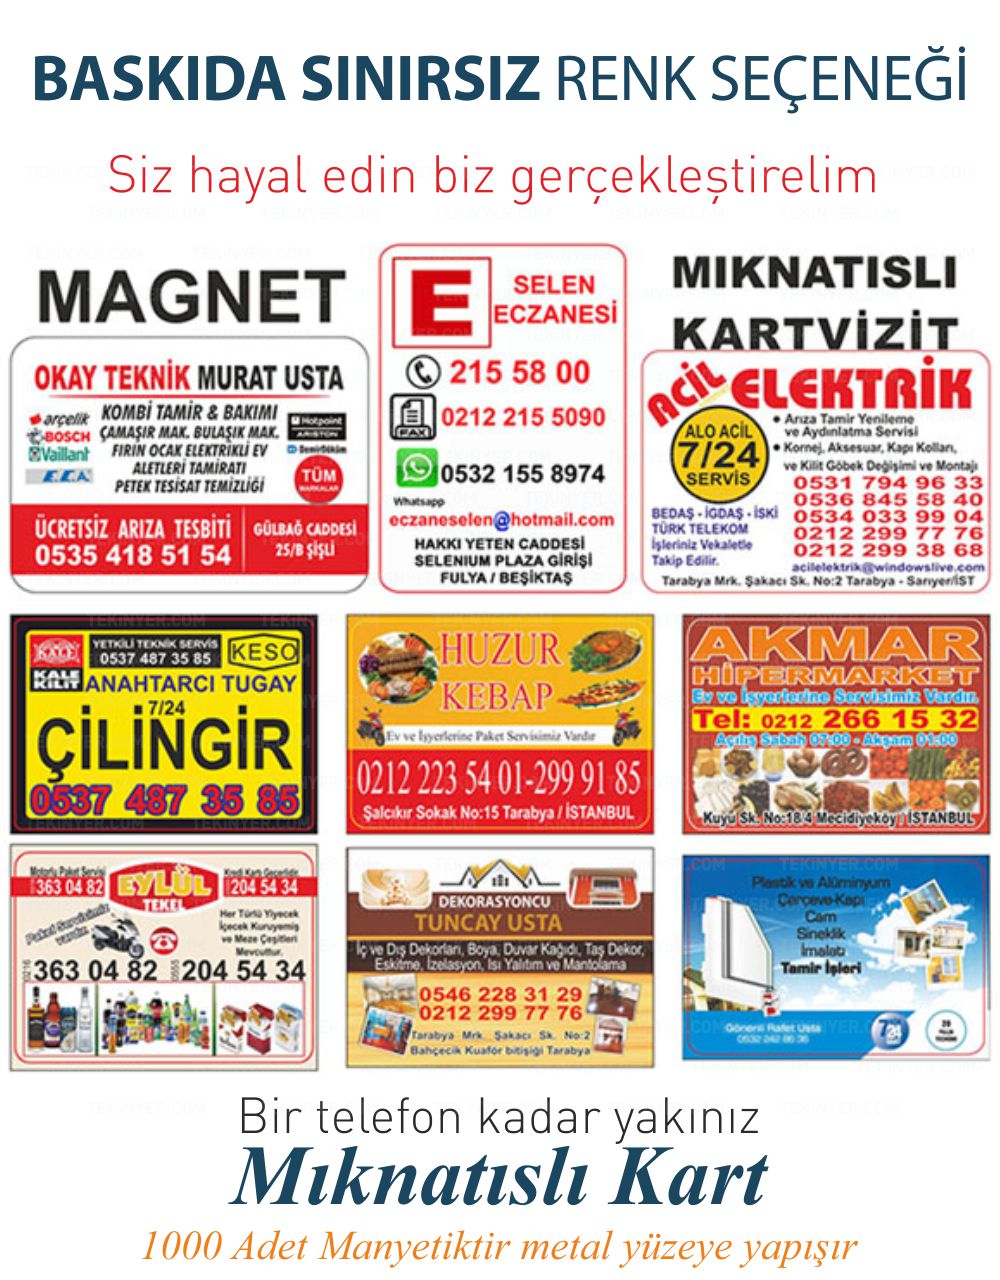 Bitlis Mıknatıslı Kartvizit Sınırsız Renk Baskı Seçeneği